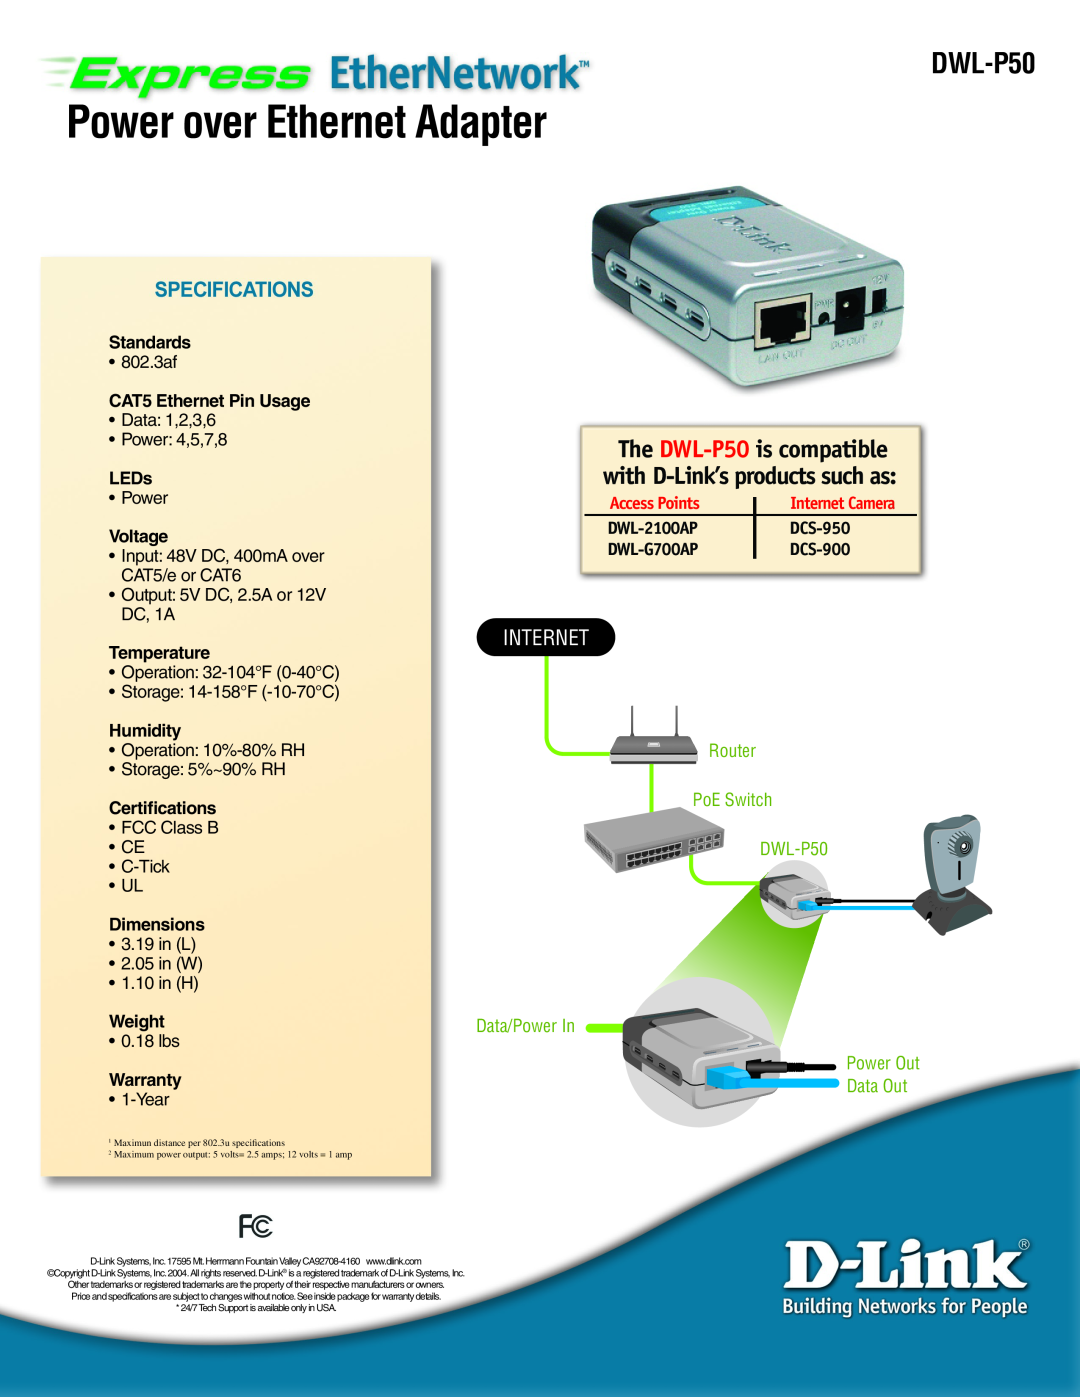 D-Link DWL-P50 manual Power over Ethernet Adapter, Internet, Standards, CAT5 Ethernet Pin Usage, LEDs, Voltage, Temperature 